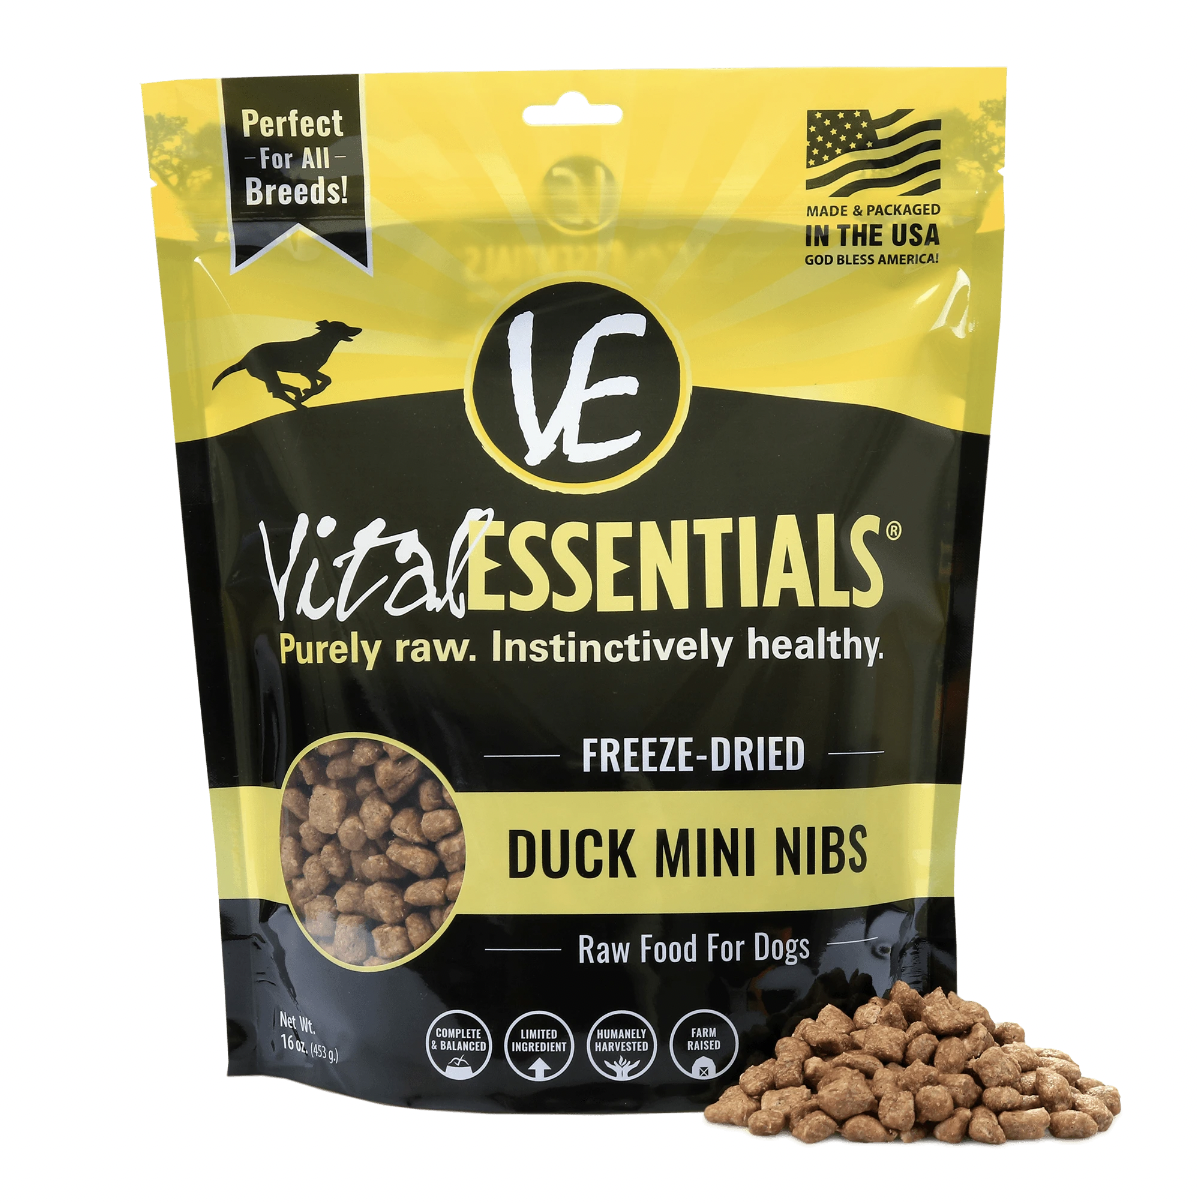 Vital Essentials Duck Mini Nibs Grain Free Dog Freeze-Dried Food